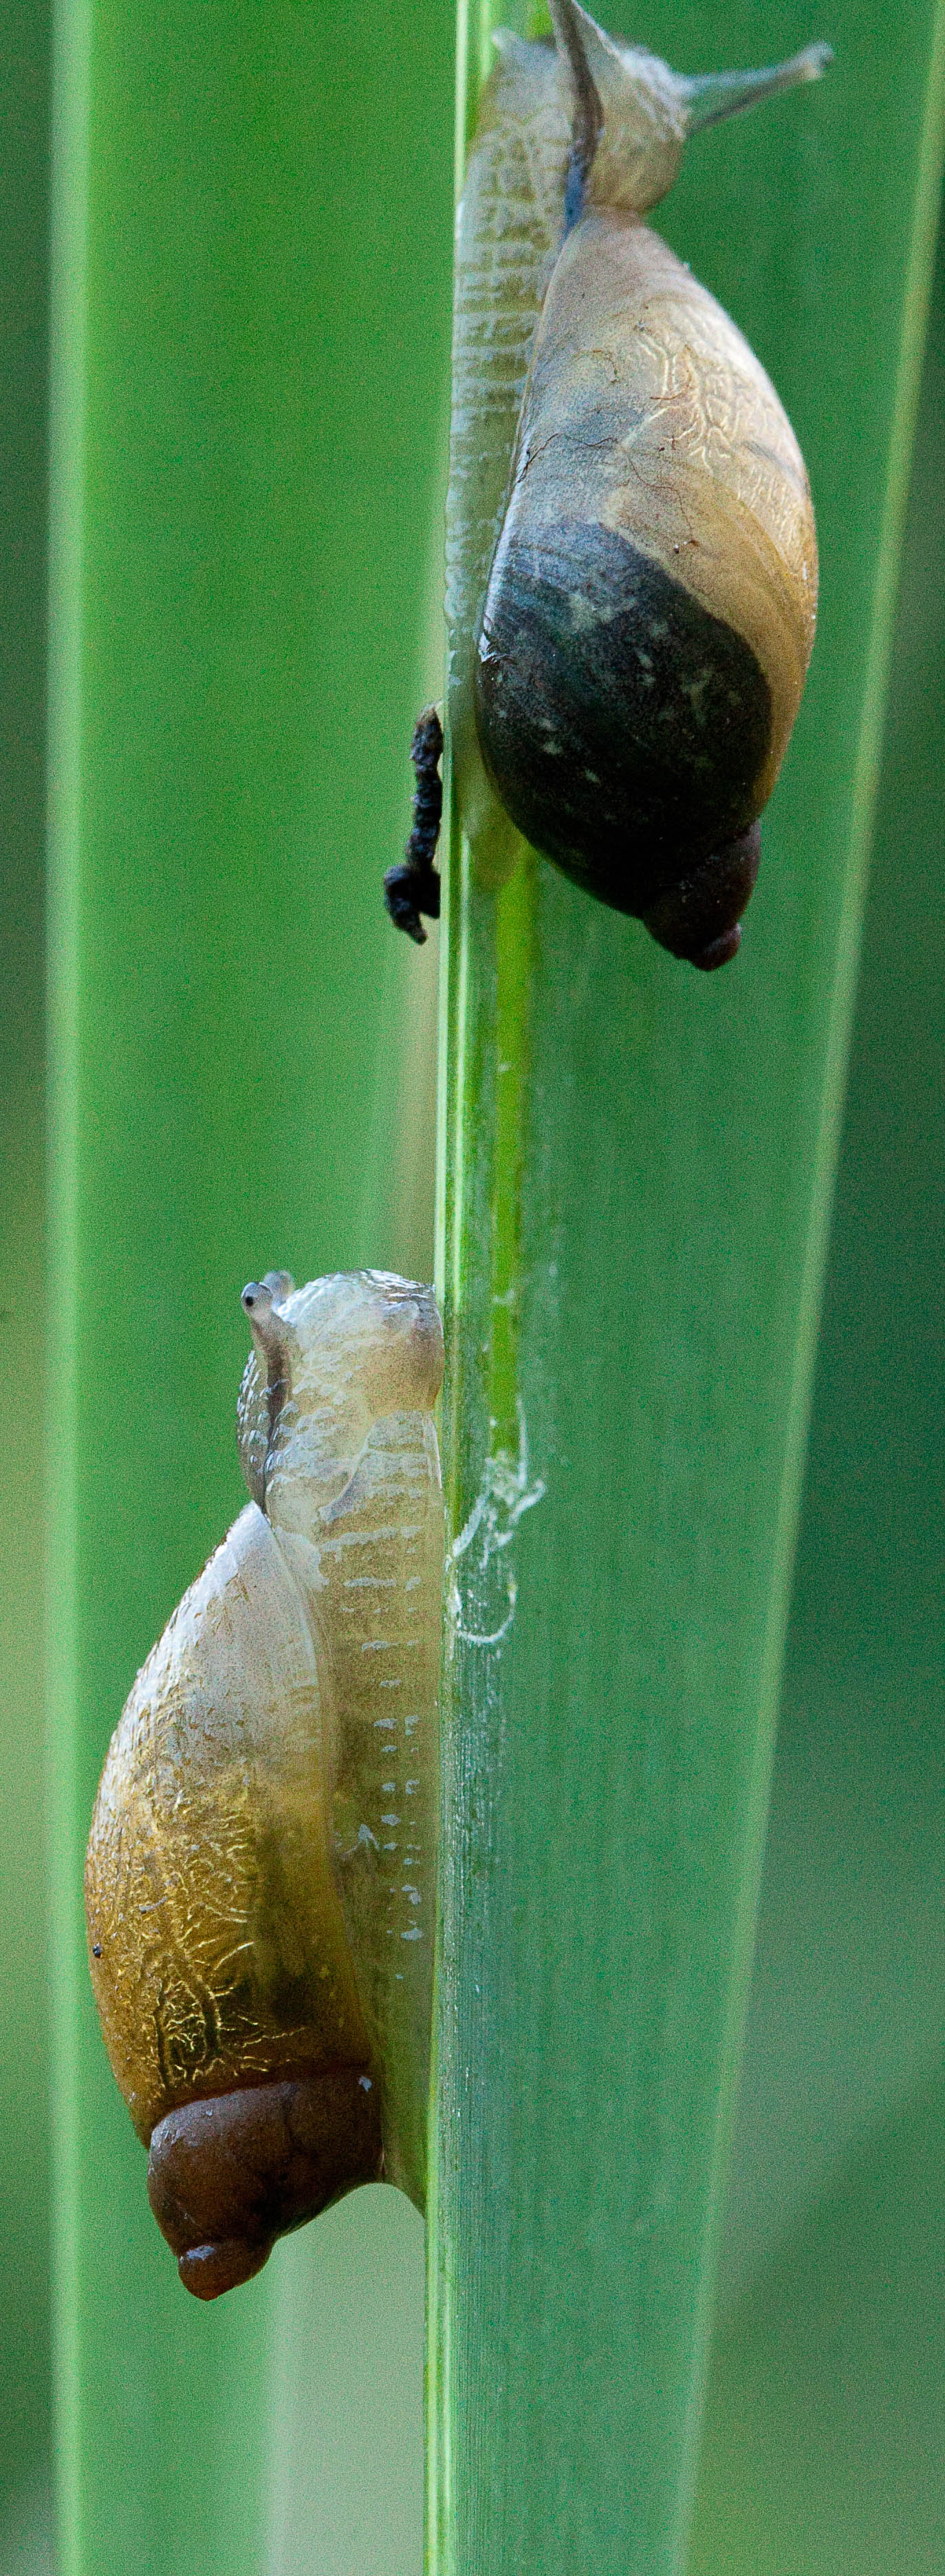 Snails sharing a blade of grass.